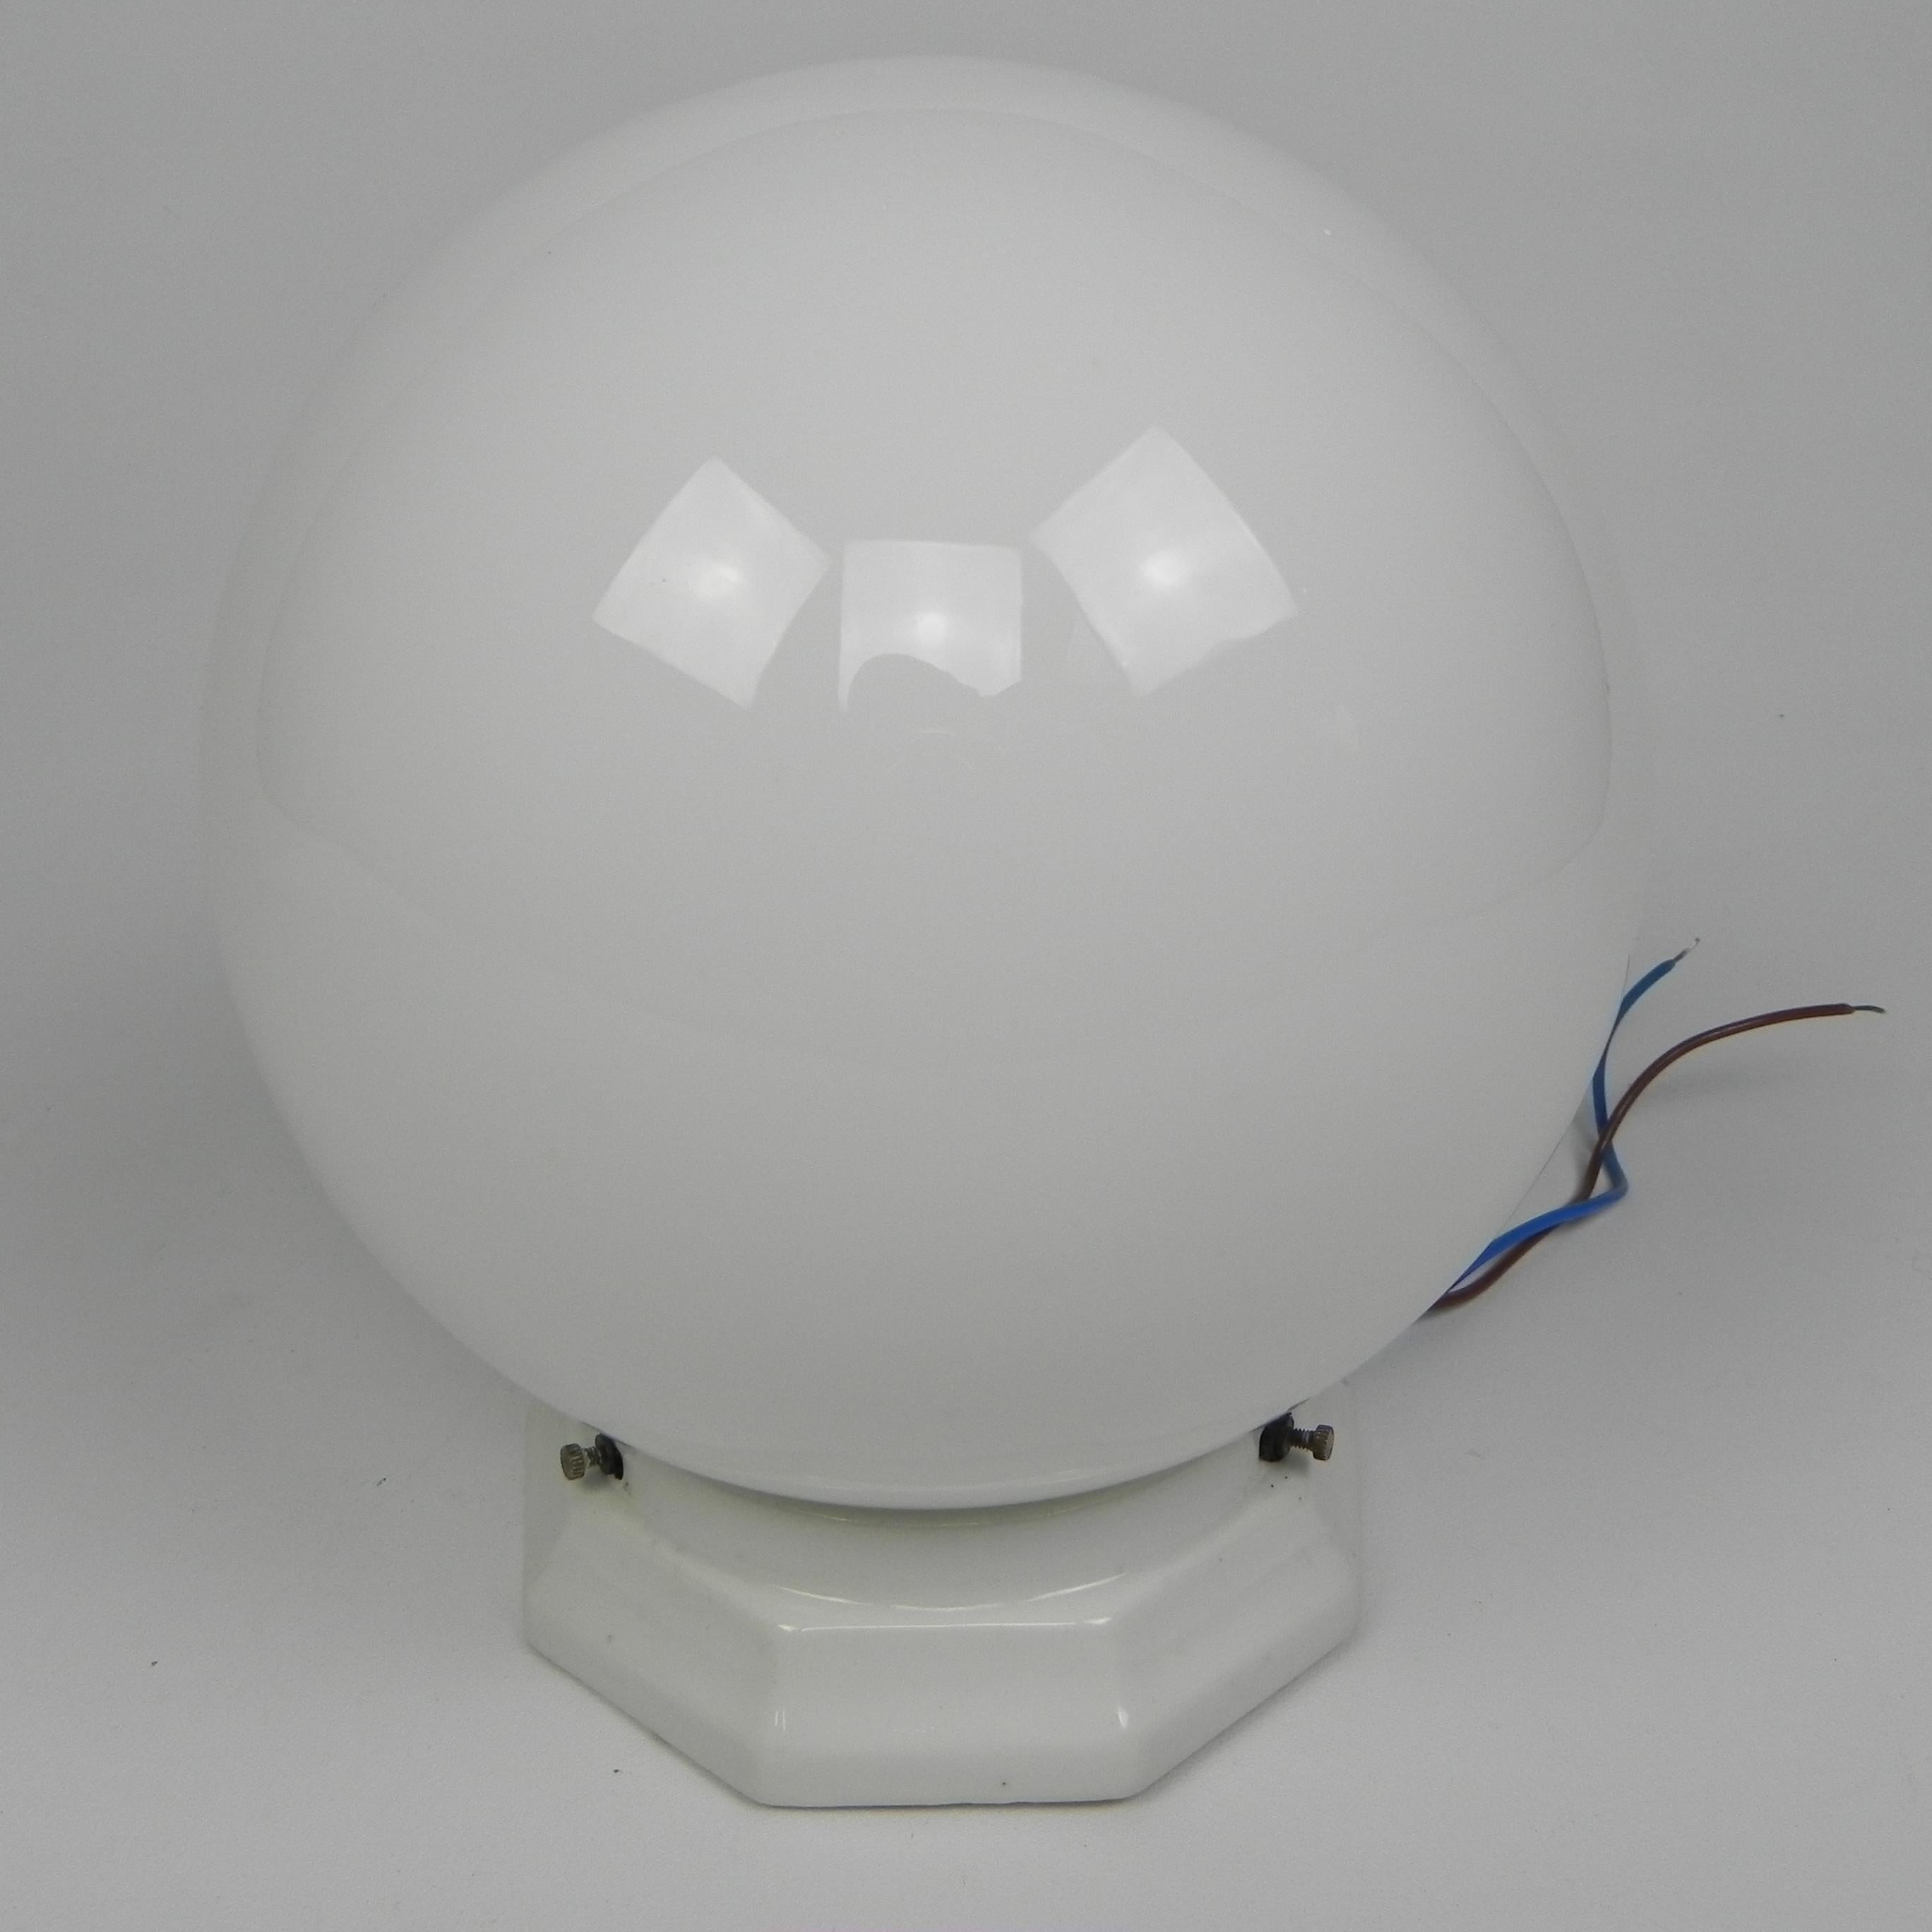 Hauteur totale : 24 cm.
Ø boule en verre : 18 cm.
Hauteur de la boule de verre : 18 cm.
La lampe est dotée d'une grande douille (E27).
et un nouveau fil de discussion.
L'appareil est marqué : 